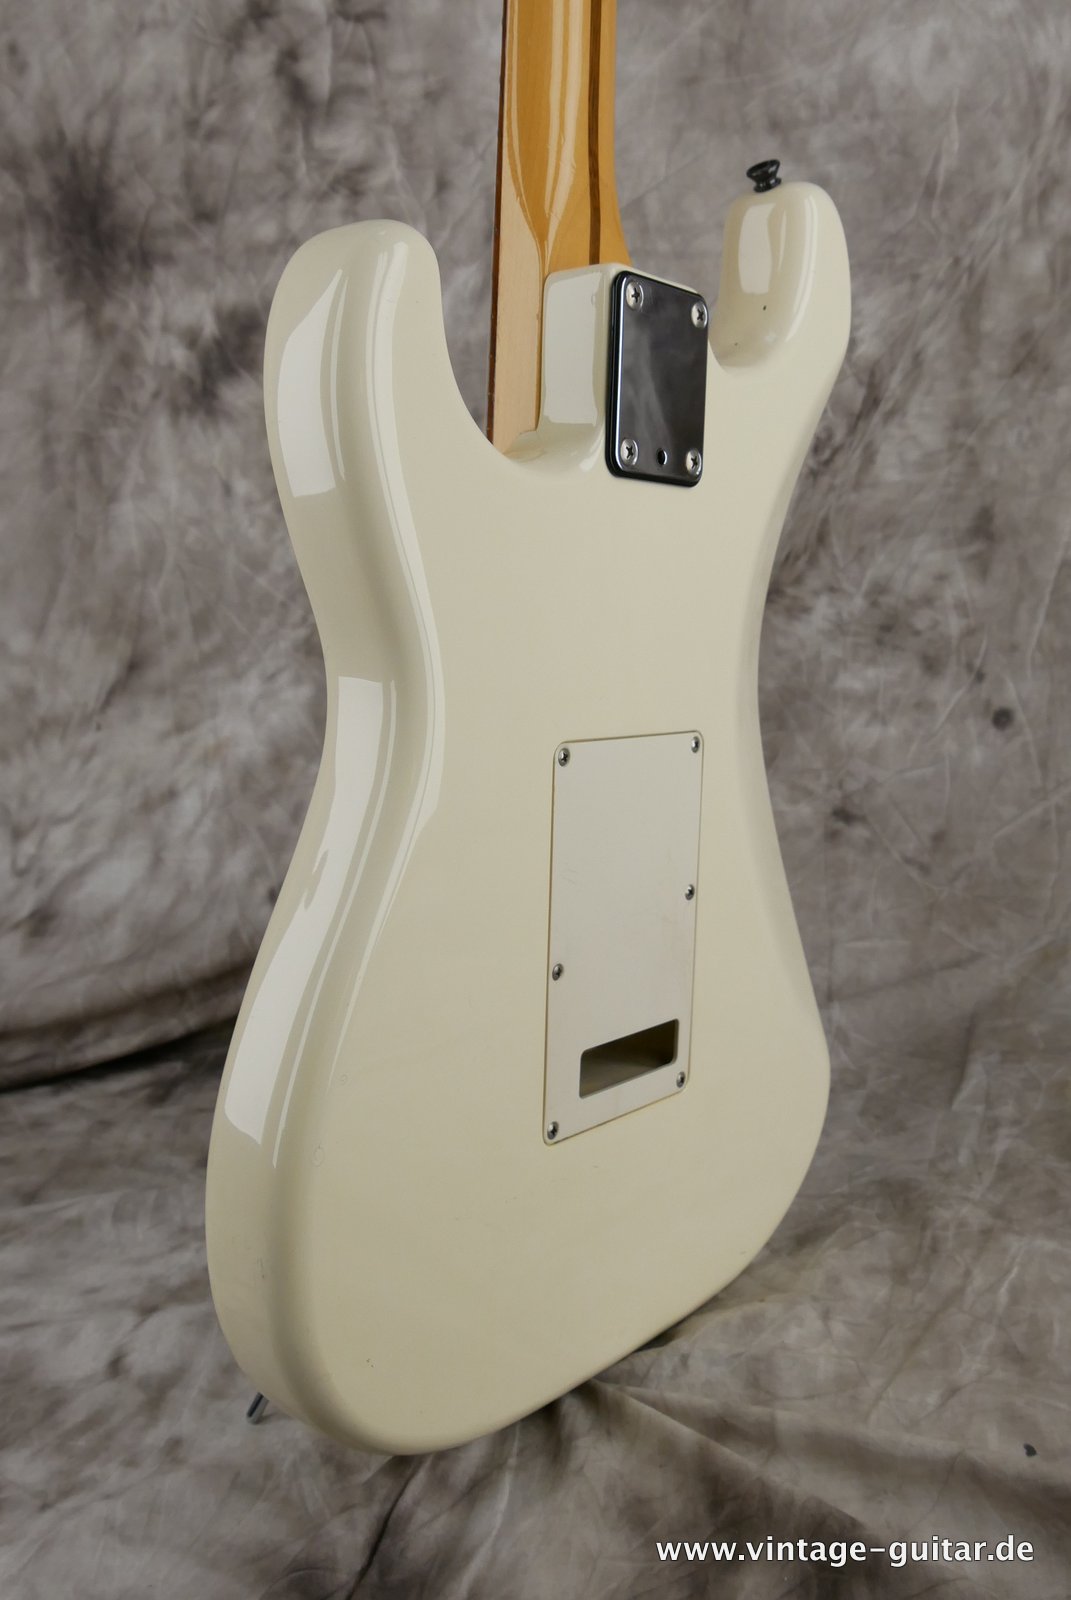 Fender-Stratocaster-MIJ-1985-Kahler-Tremolo-white-019.JPG